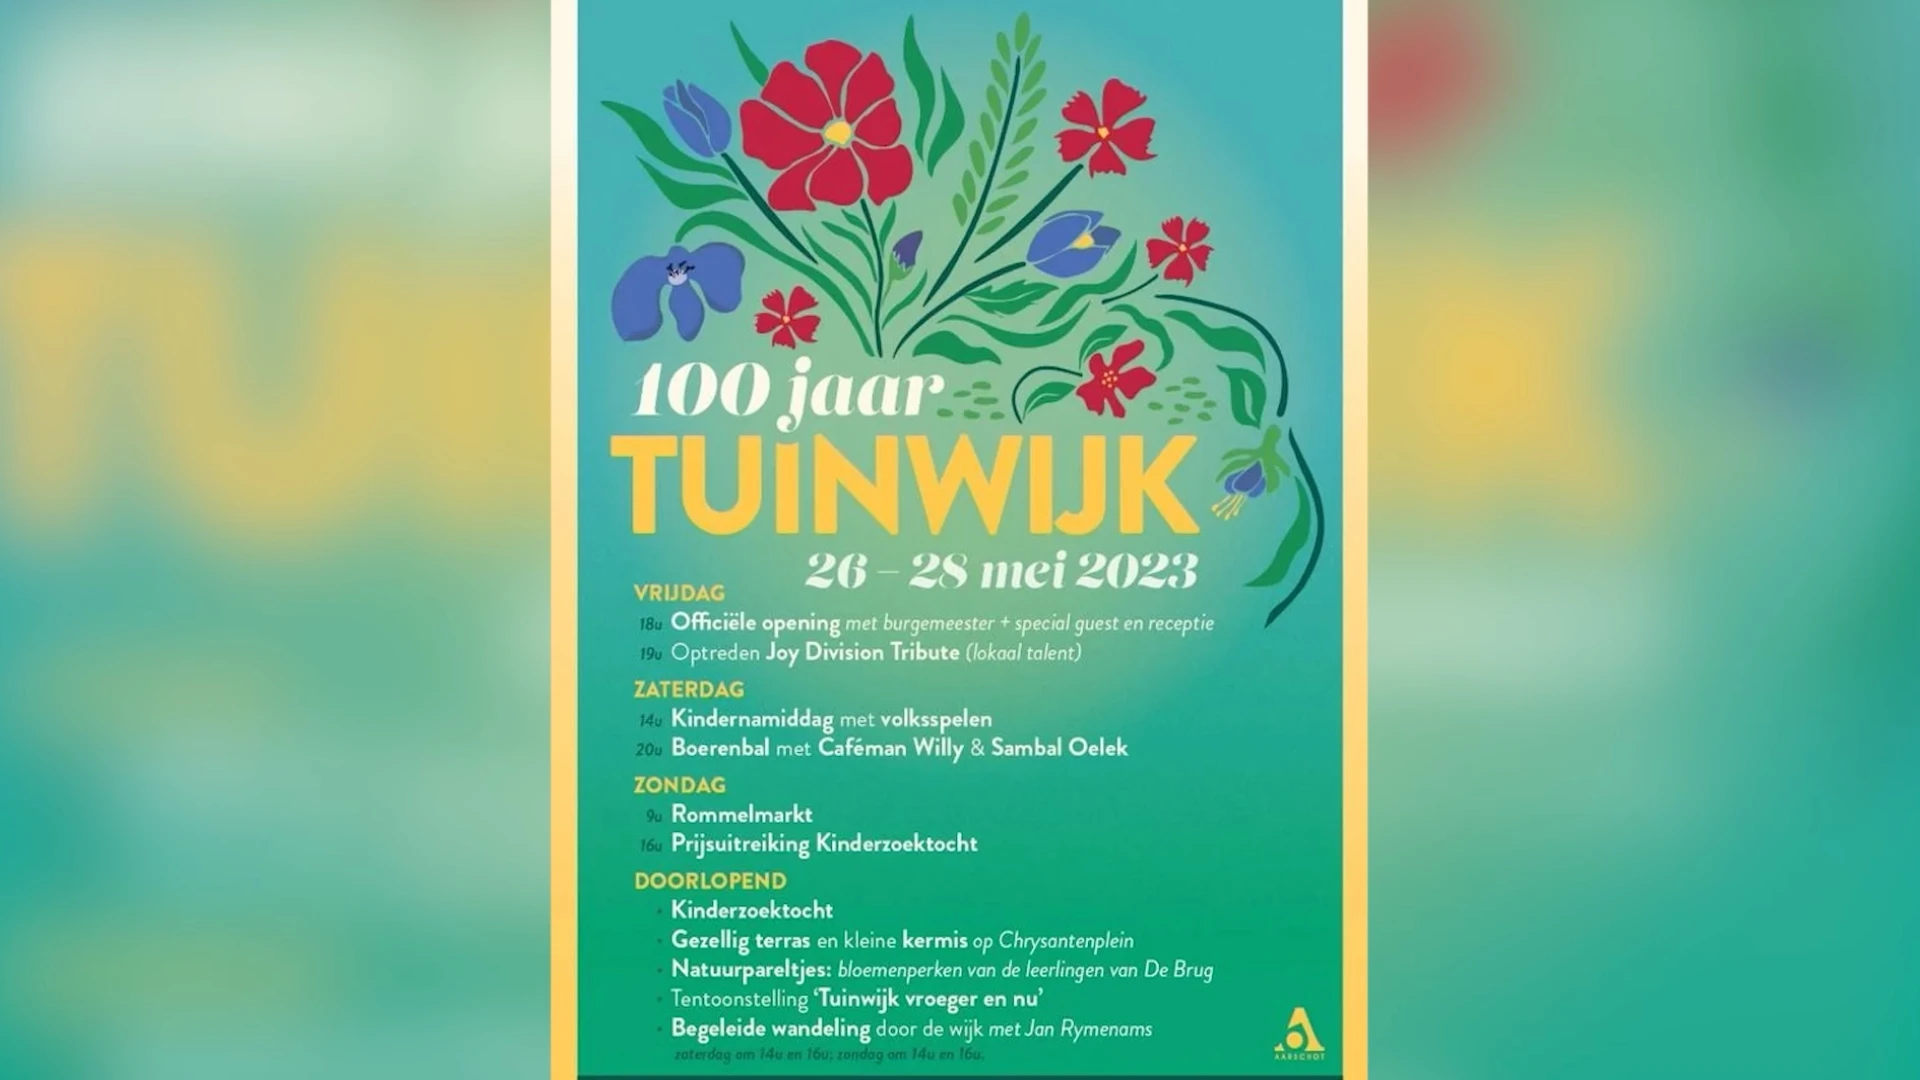 Aarschot viert 100ste verjaardag Tuinwijk met uitgebreid evenementenweekend